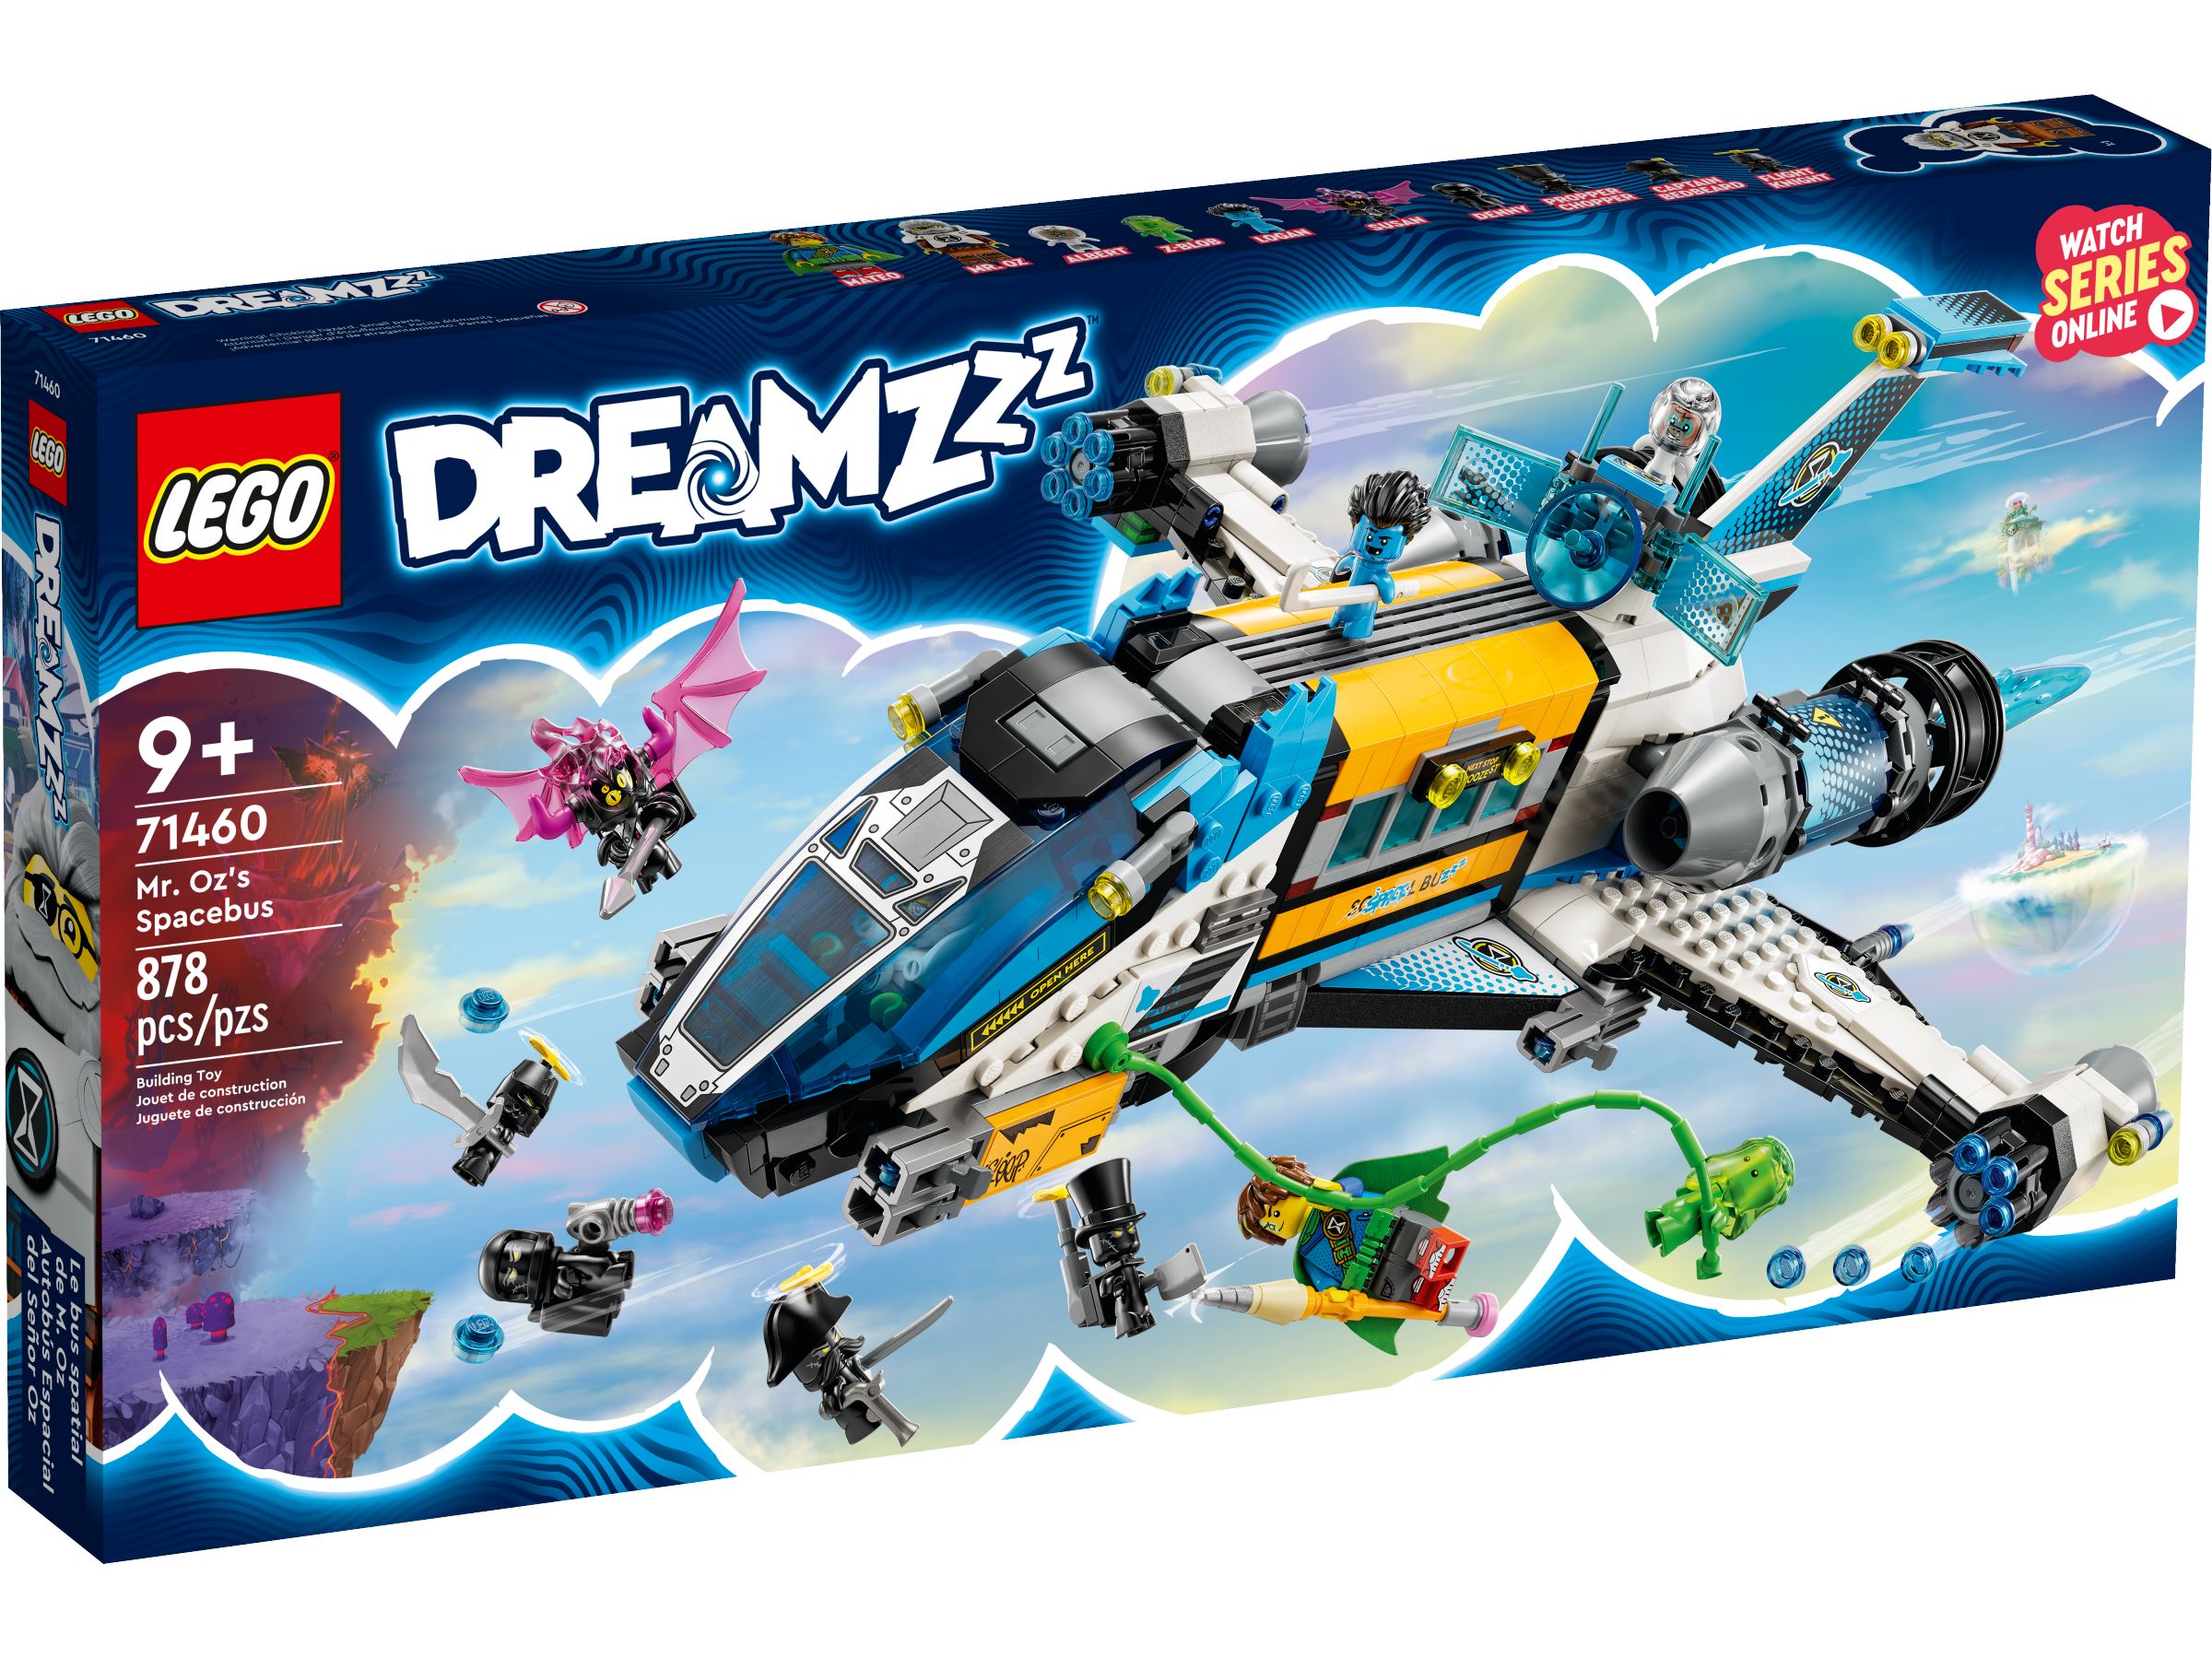 LEGO Dreamzzz 71460 Der Weltraumbus von Mr. Oz LEGO_71460_Box1_v39.jpg